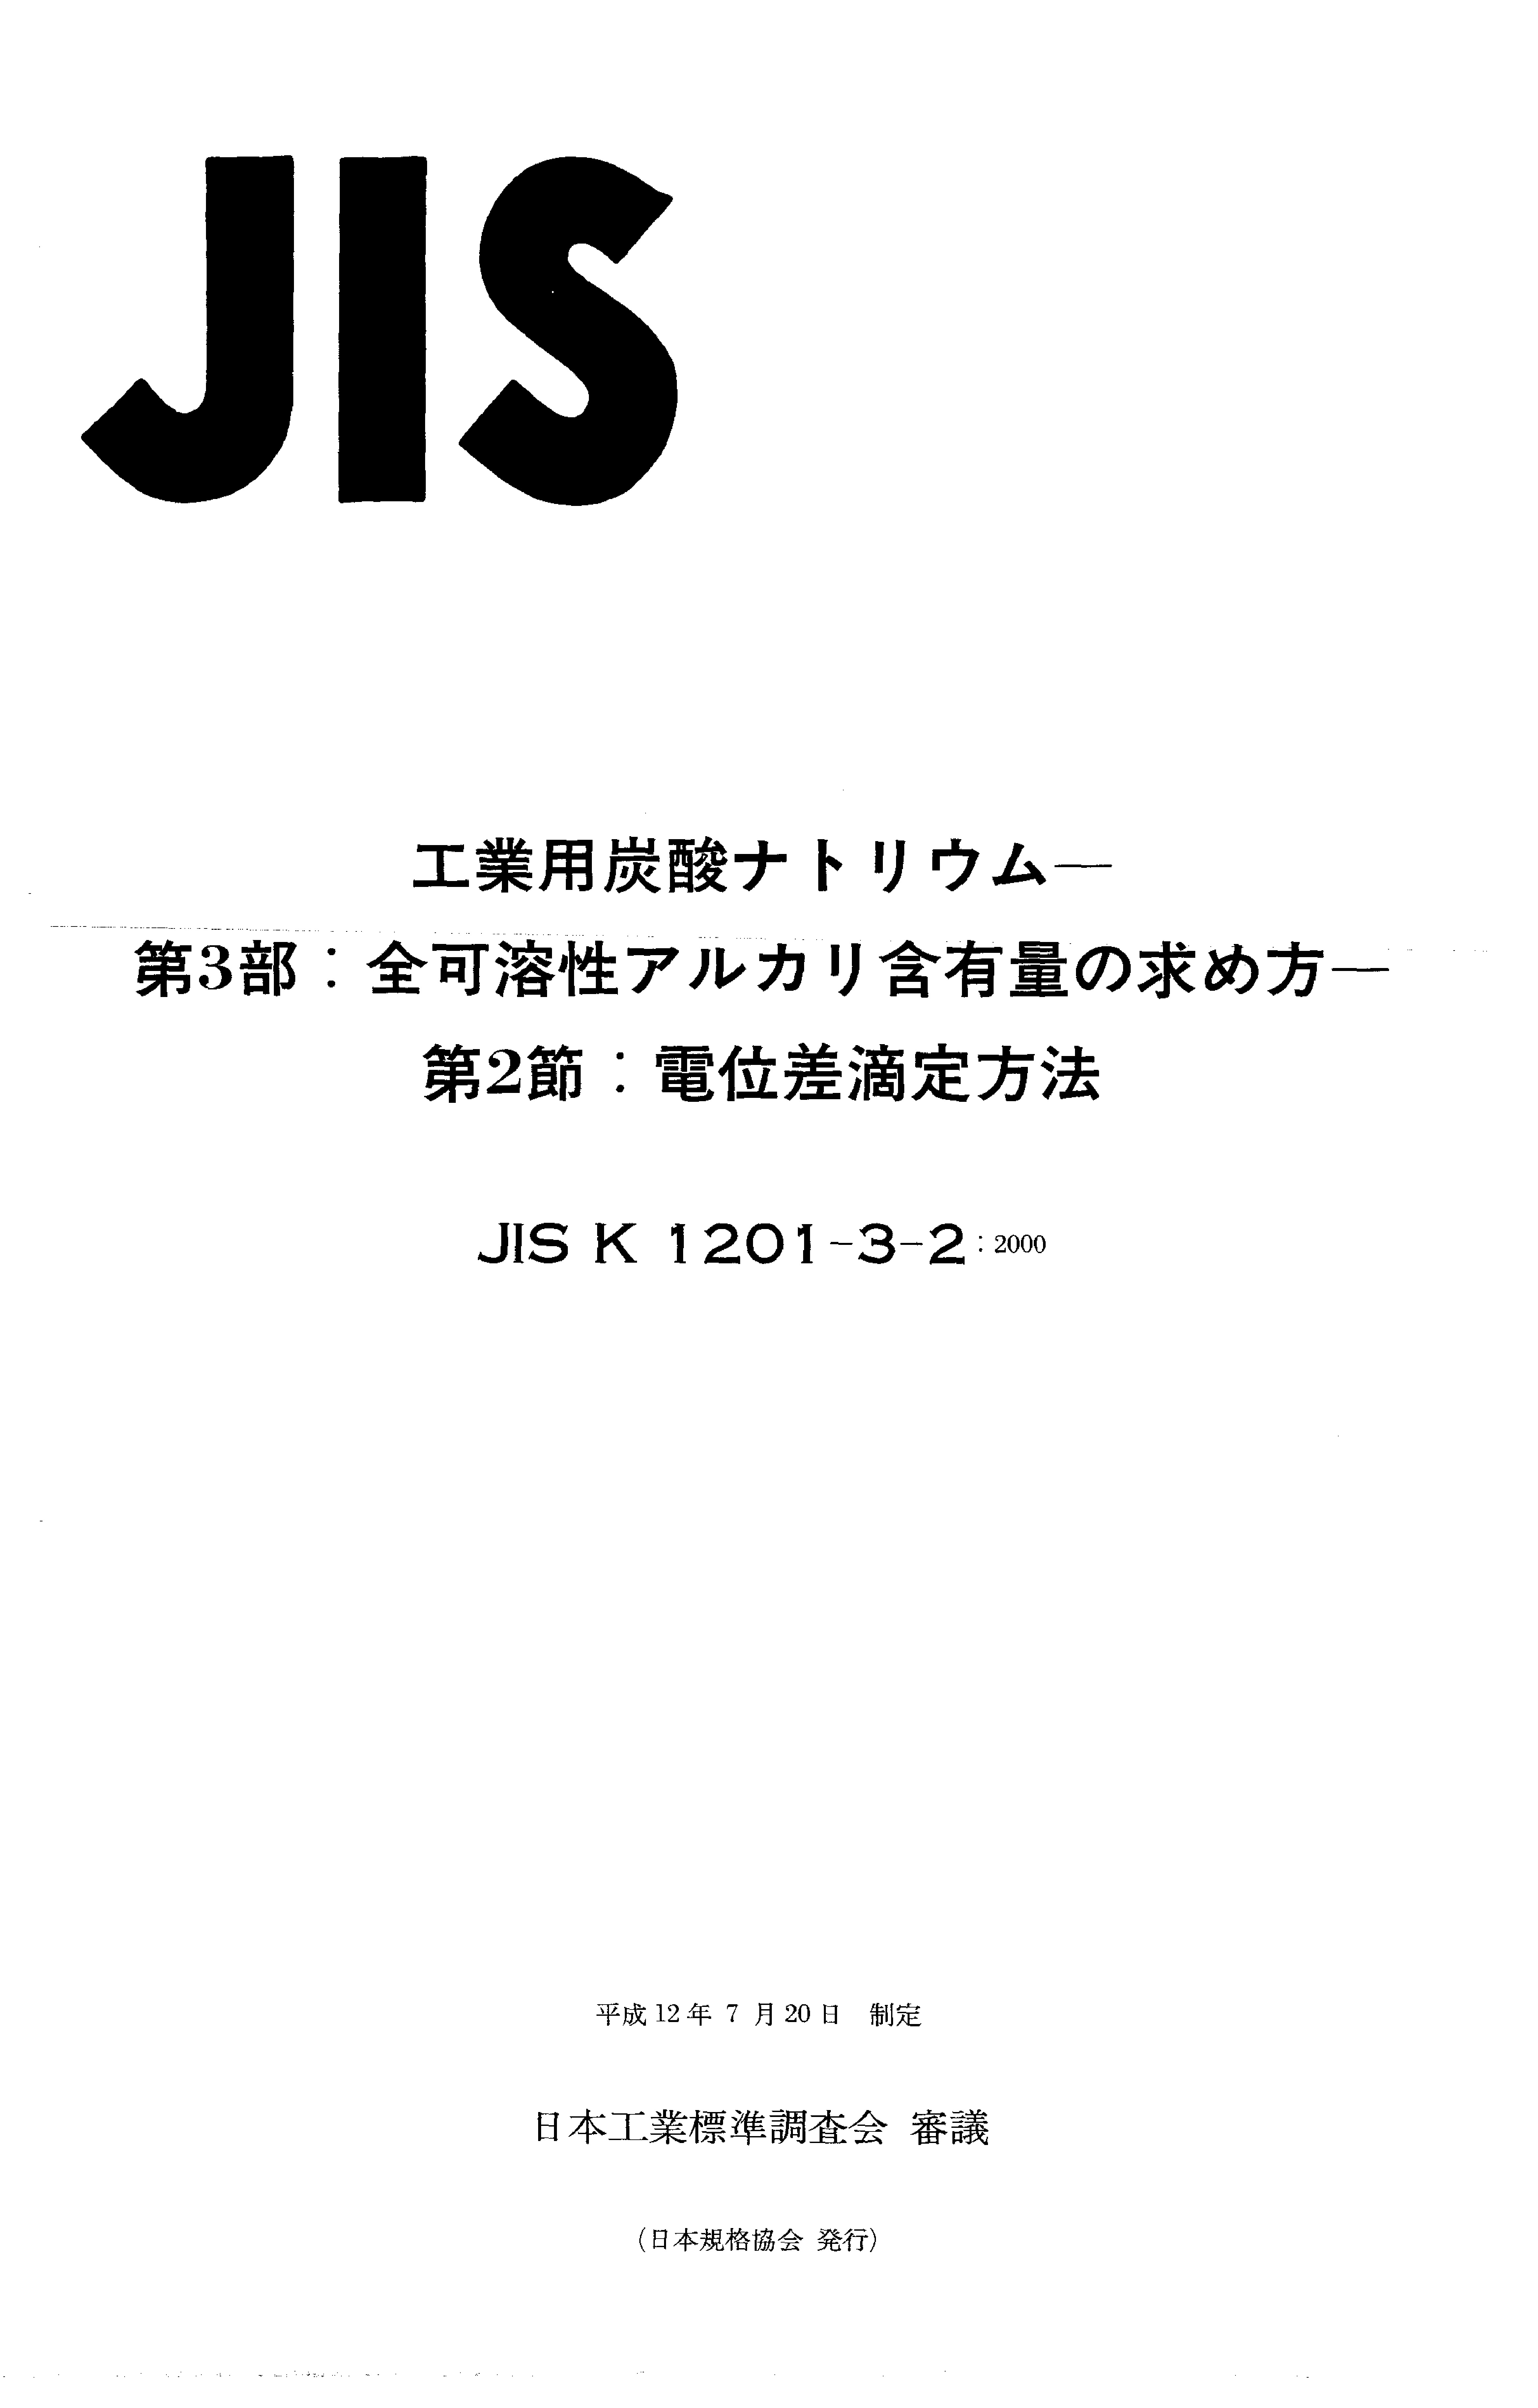 JIS K 1201-3-2:2000封面图